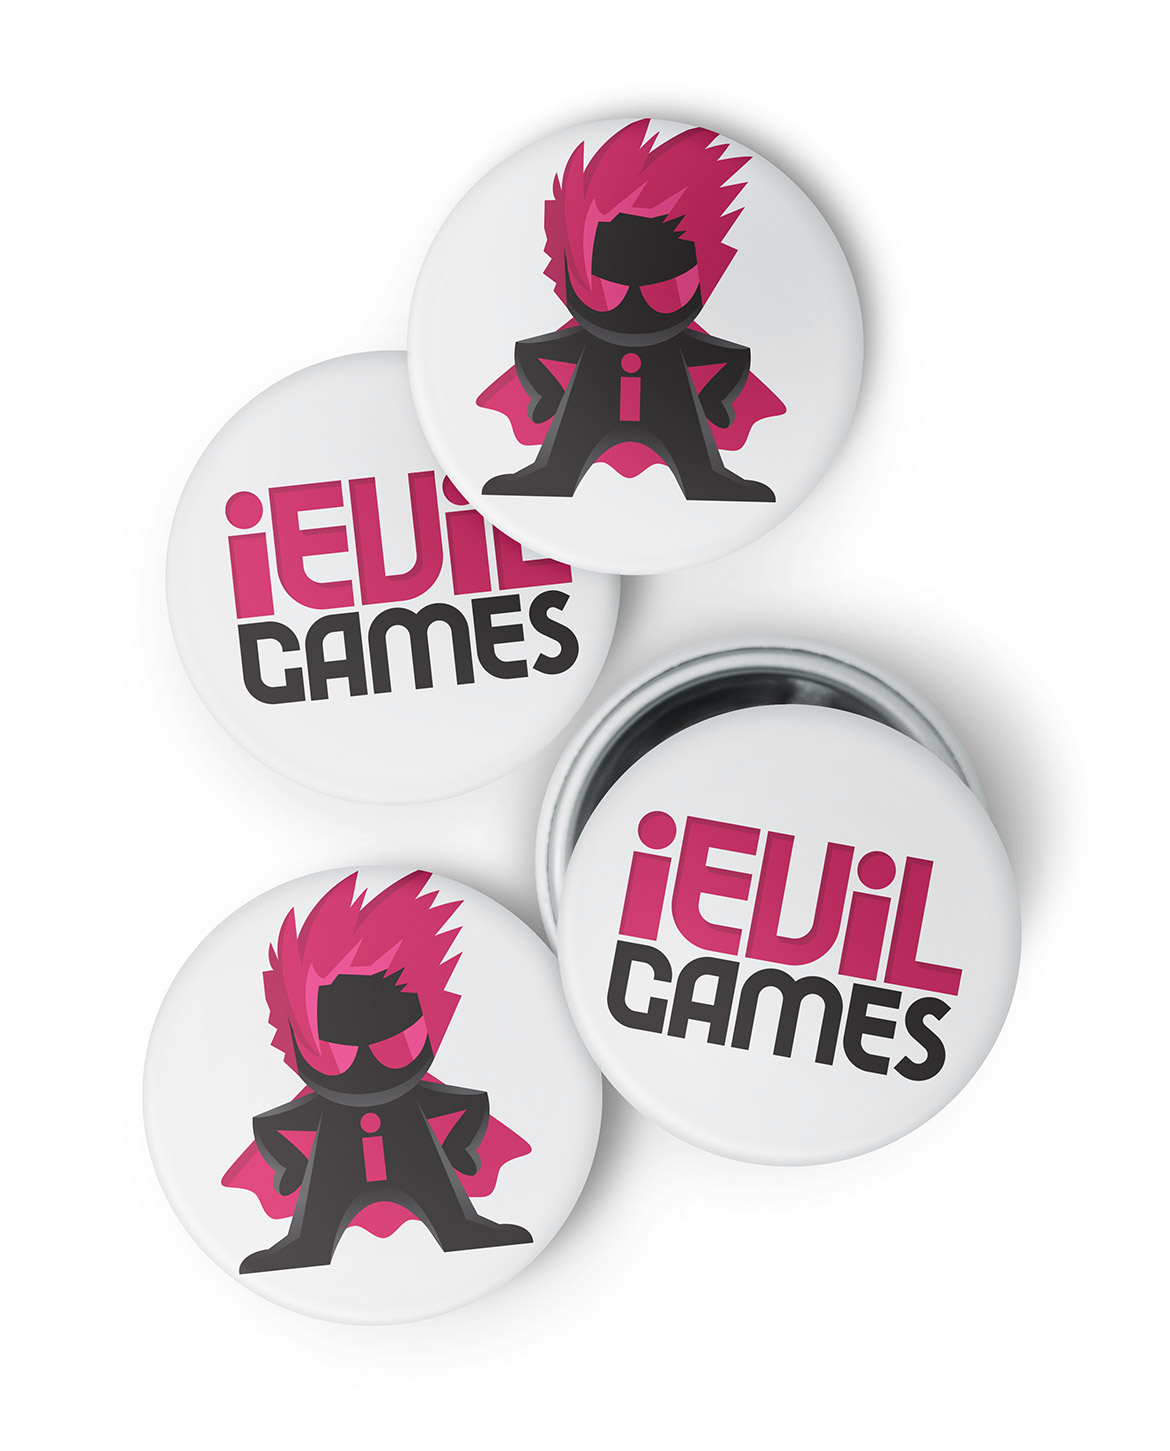 iEvil Games Logo Design on Badges